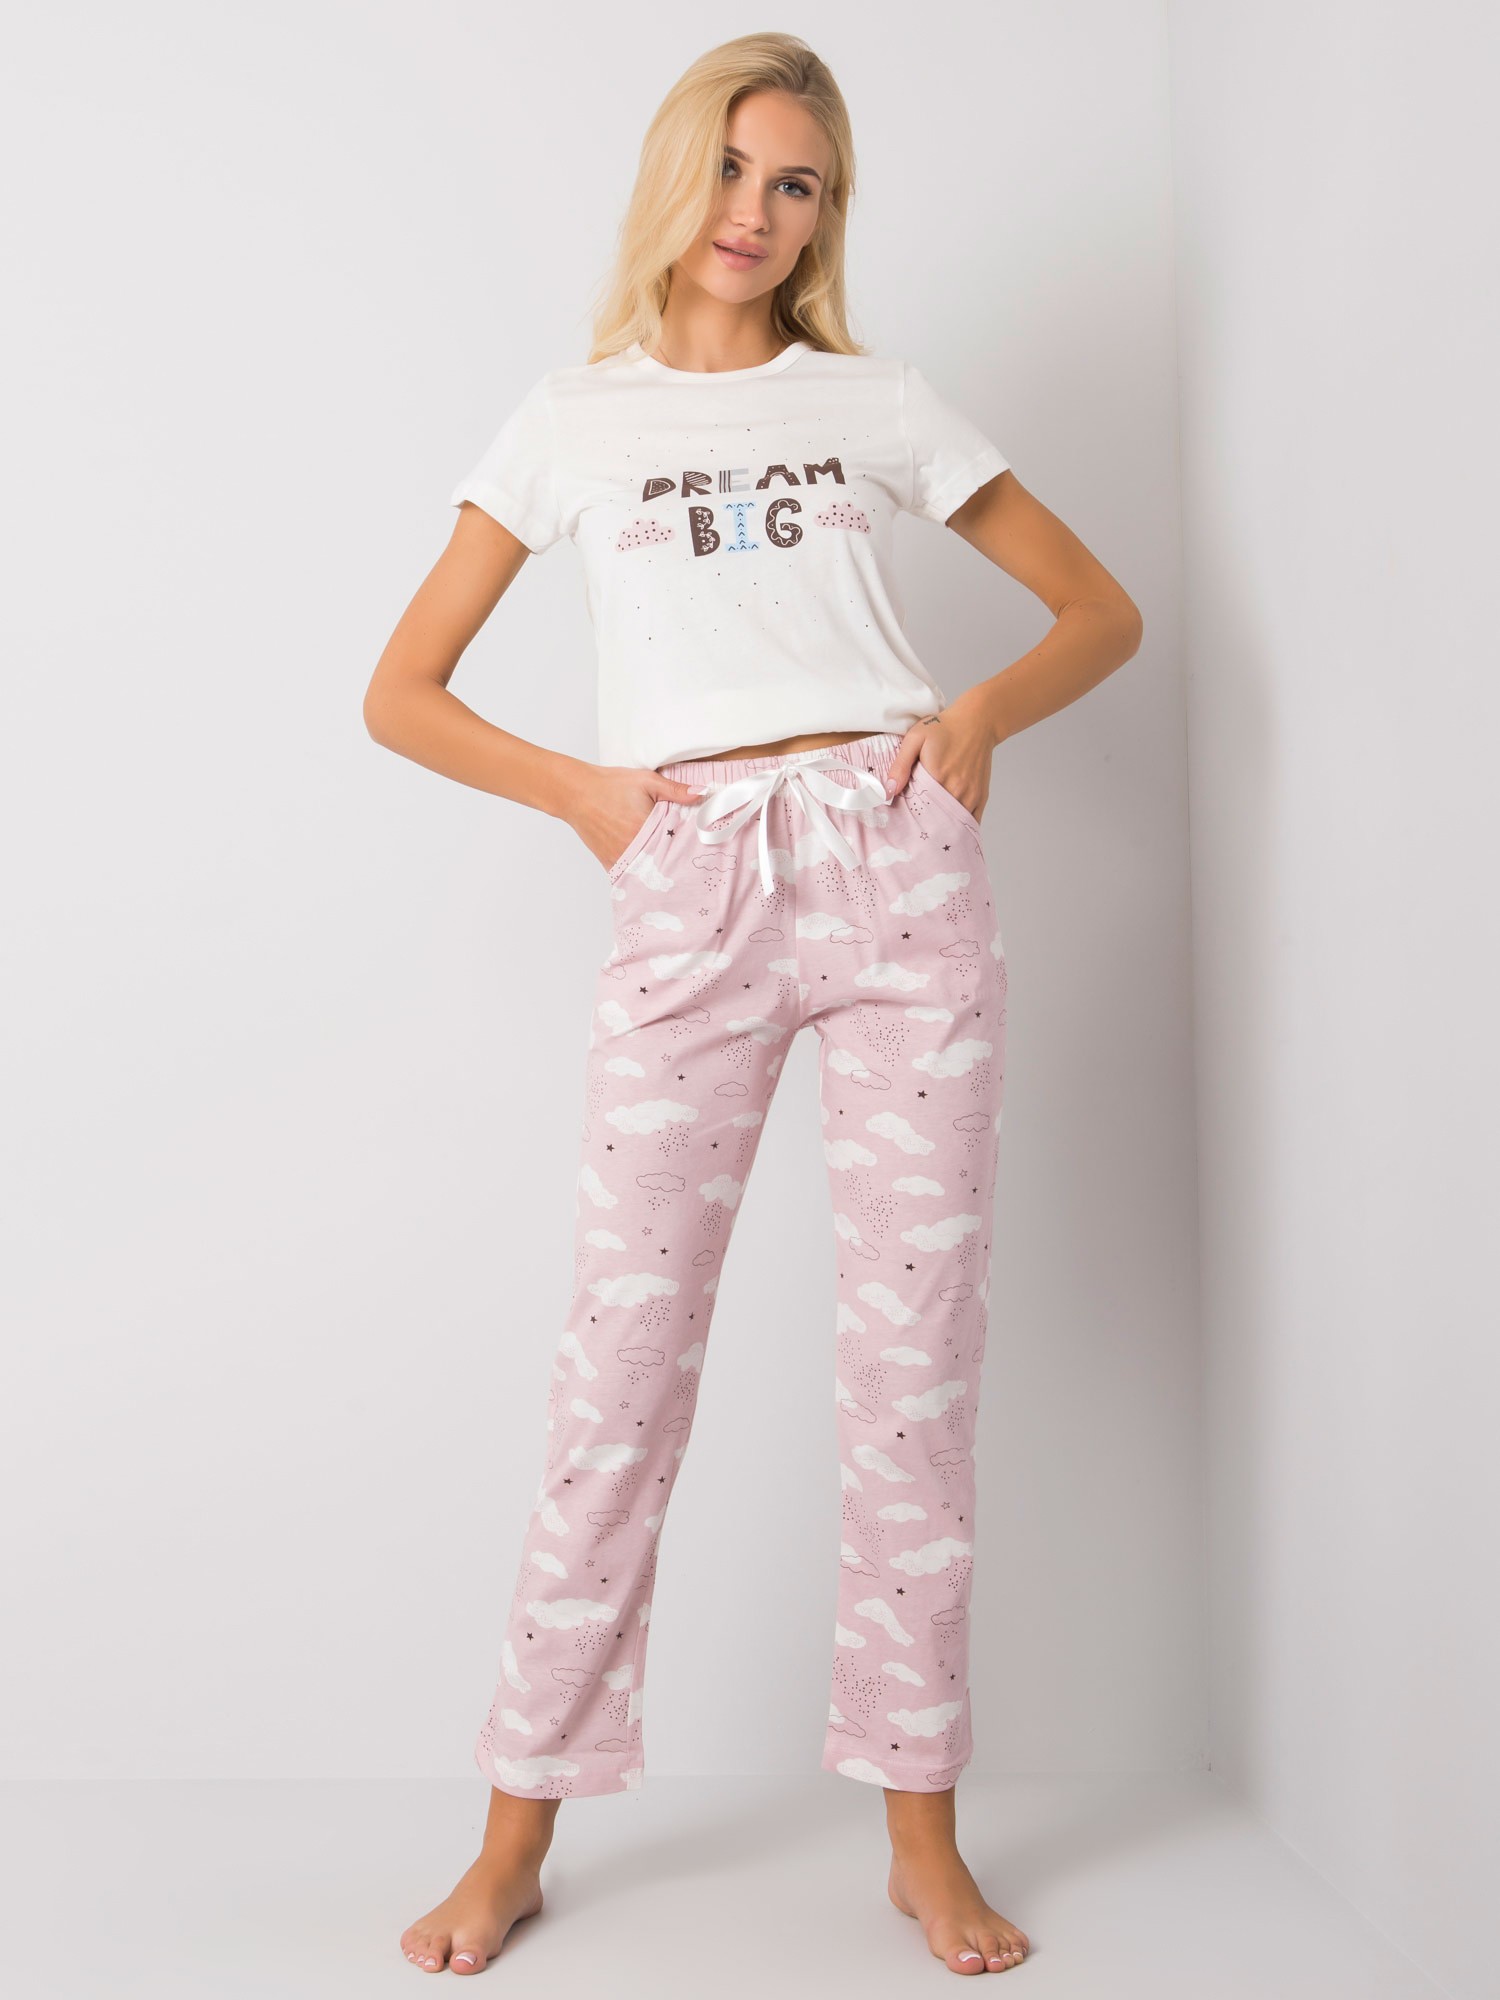 Two-piece white pajamas with print